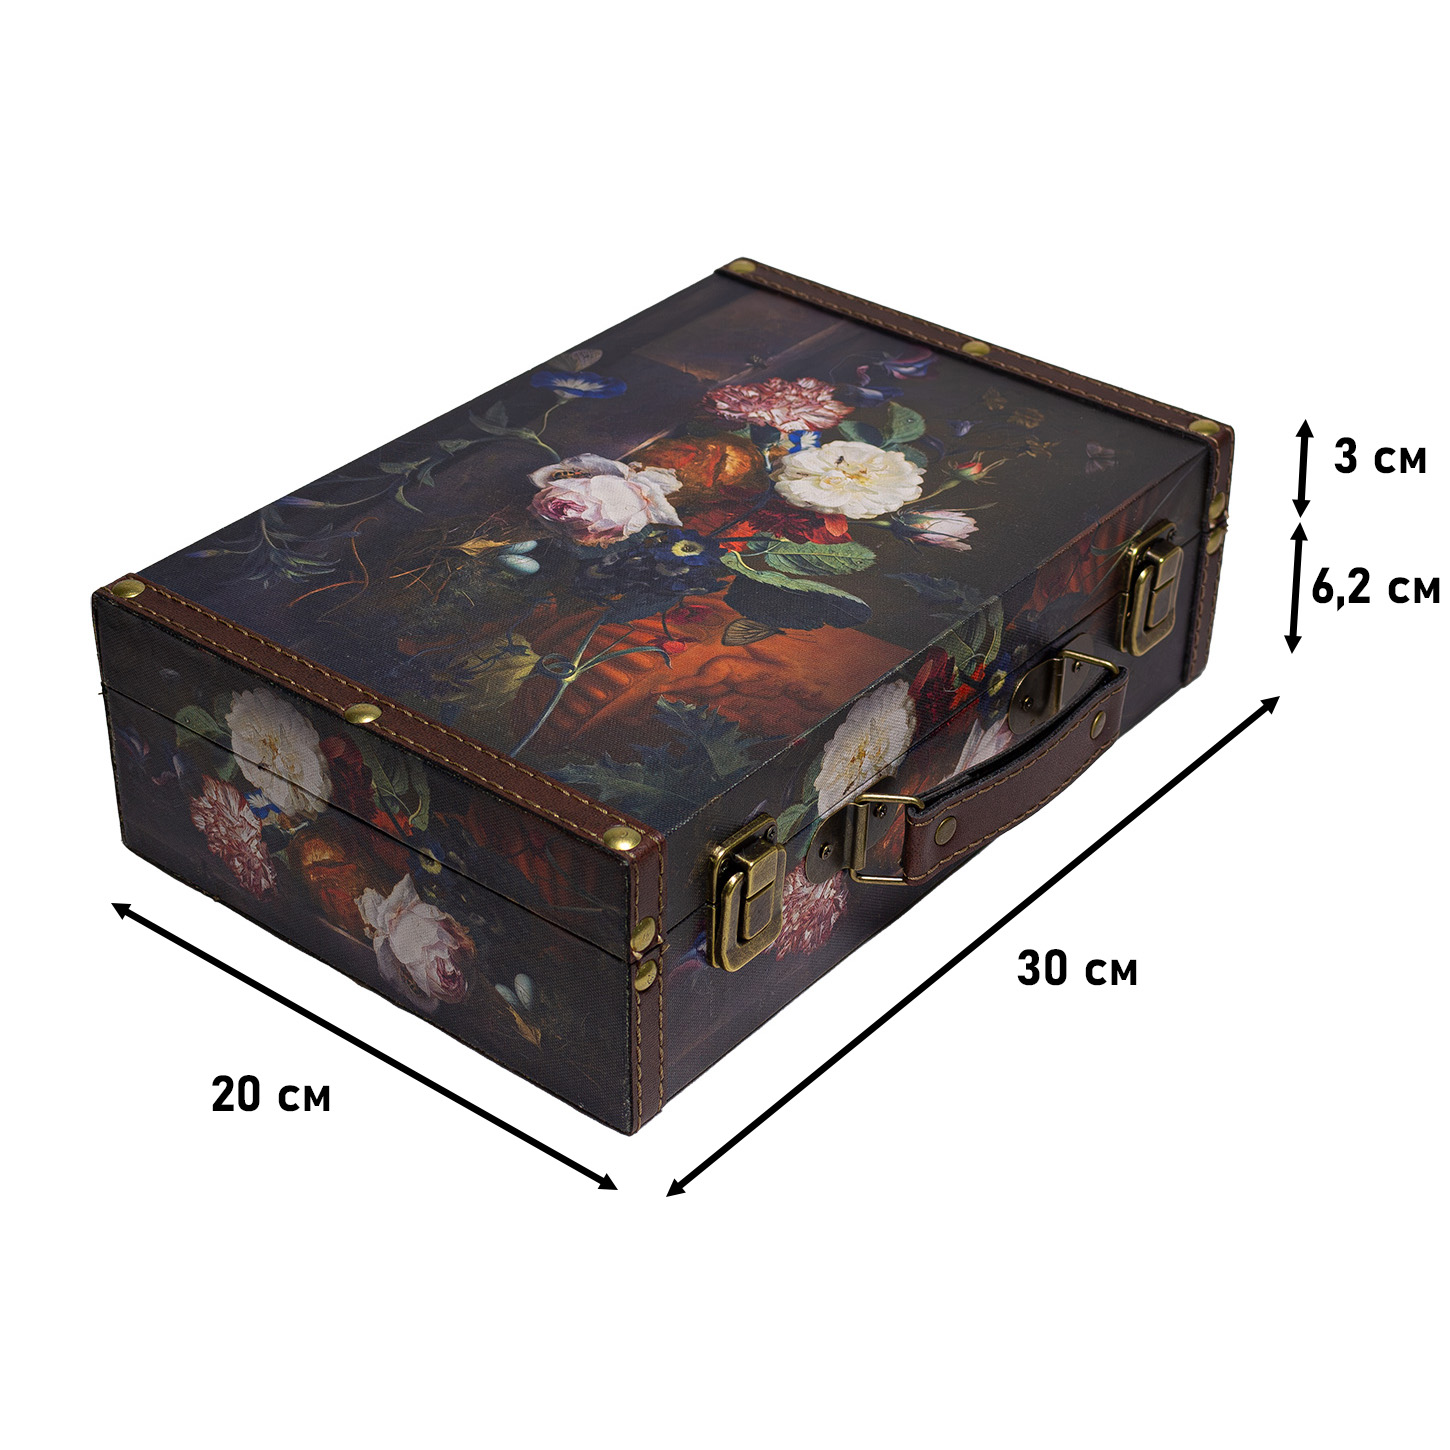 Декоративный чемодан Grand forest для хранения цветы S